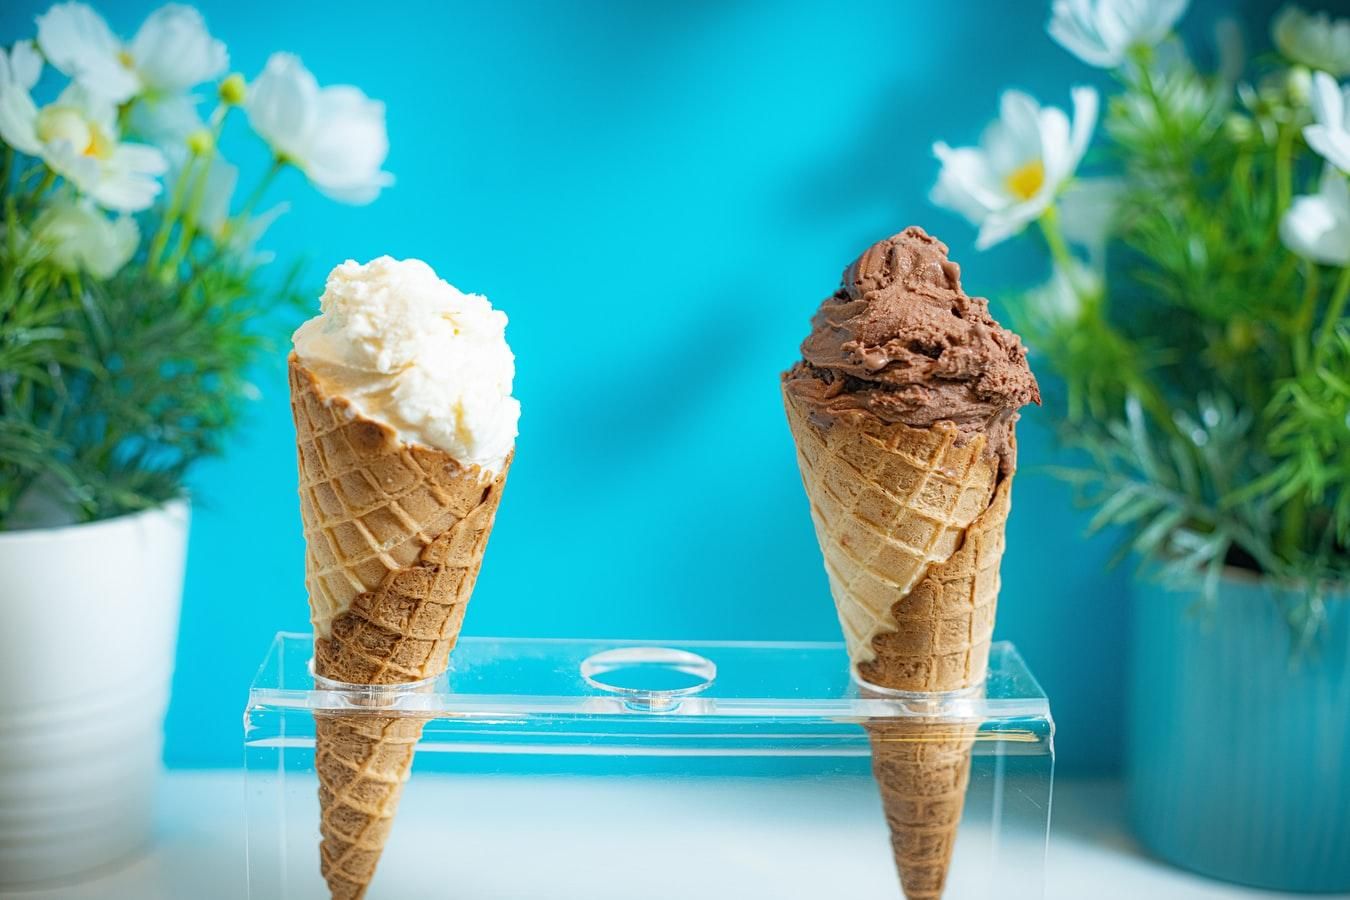 Улюблене морозиво багато про вас розповість: психологічне дослідження